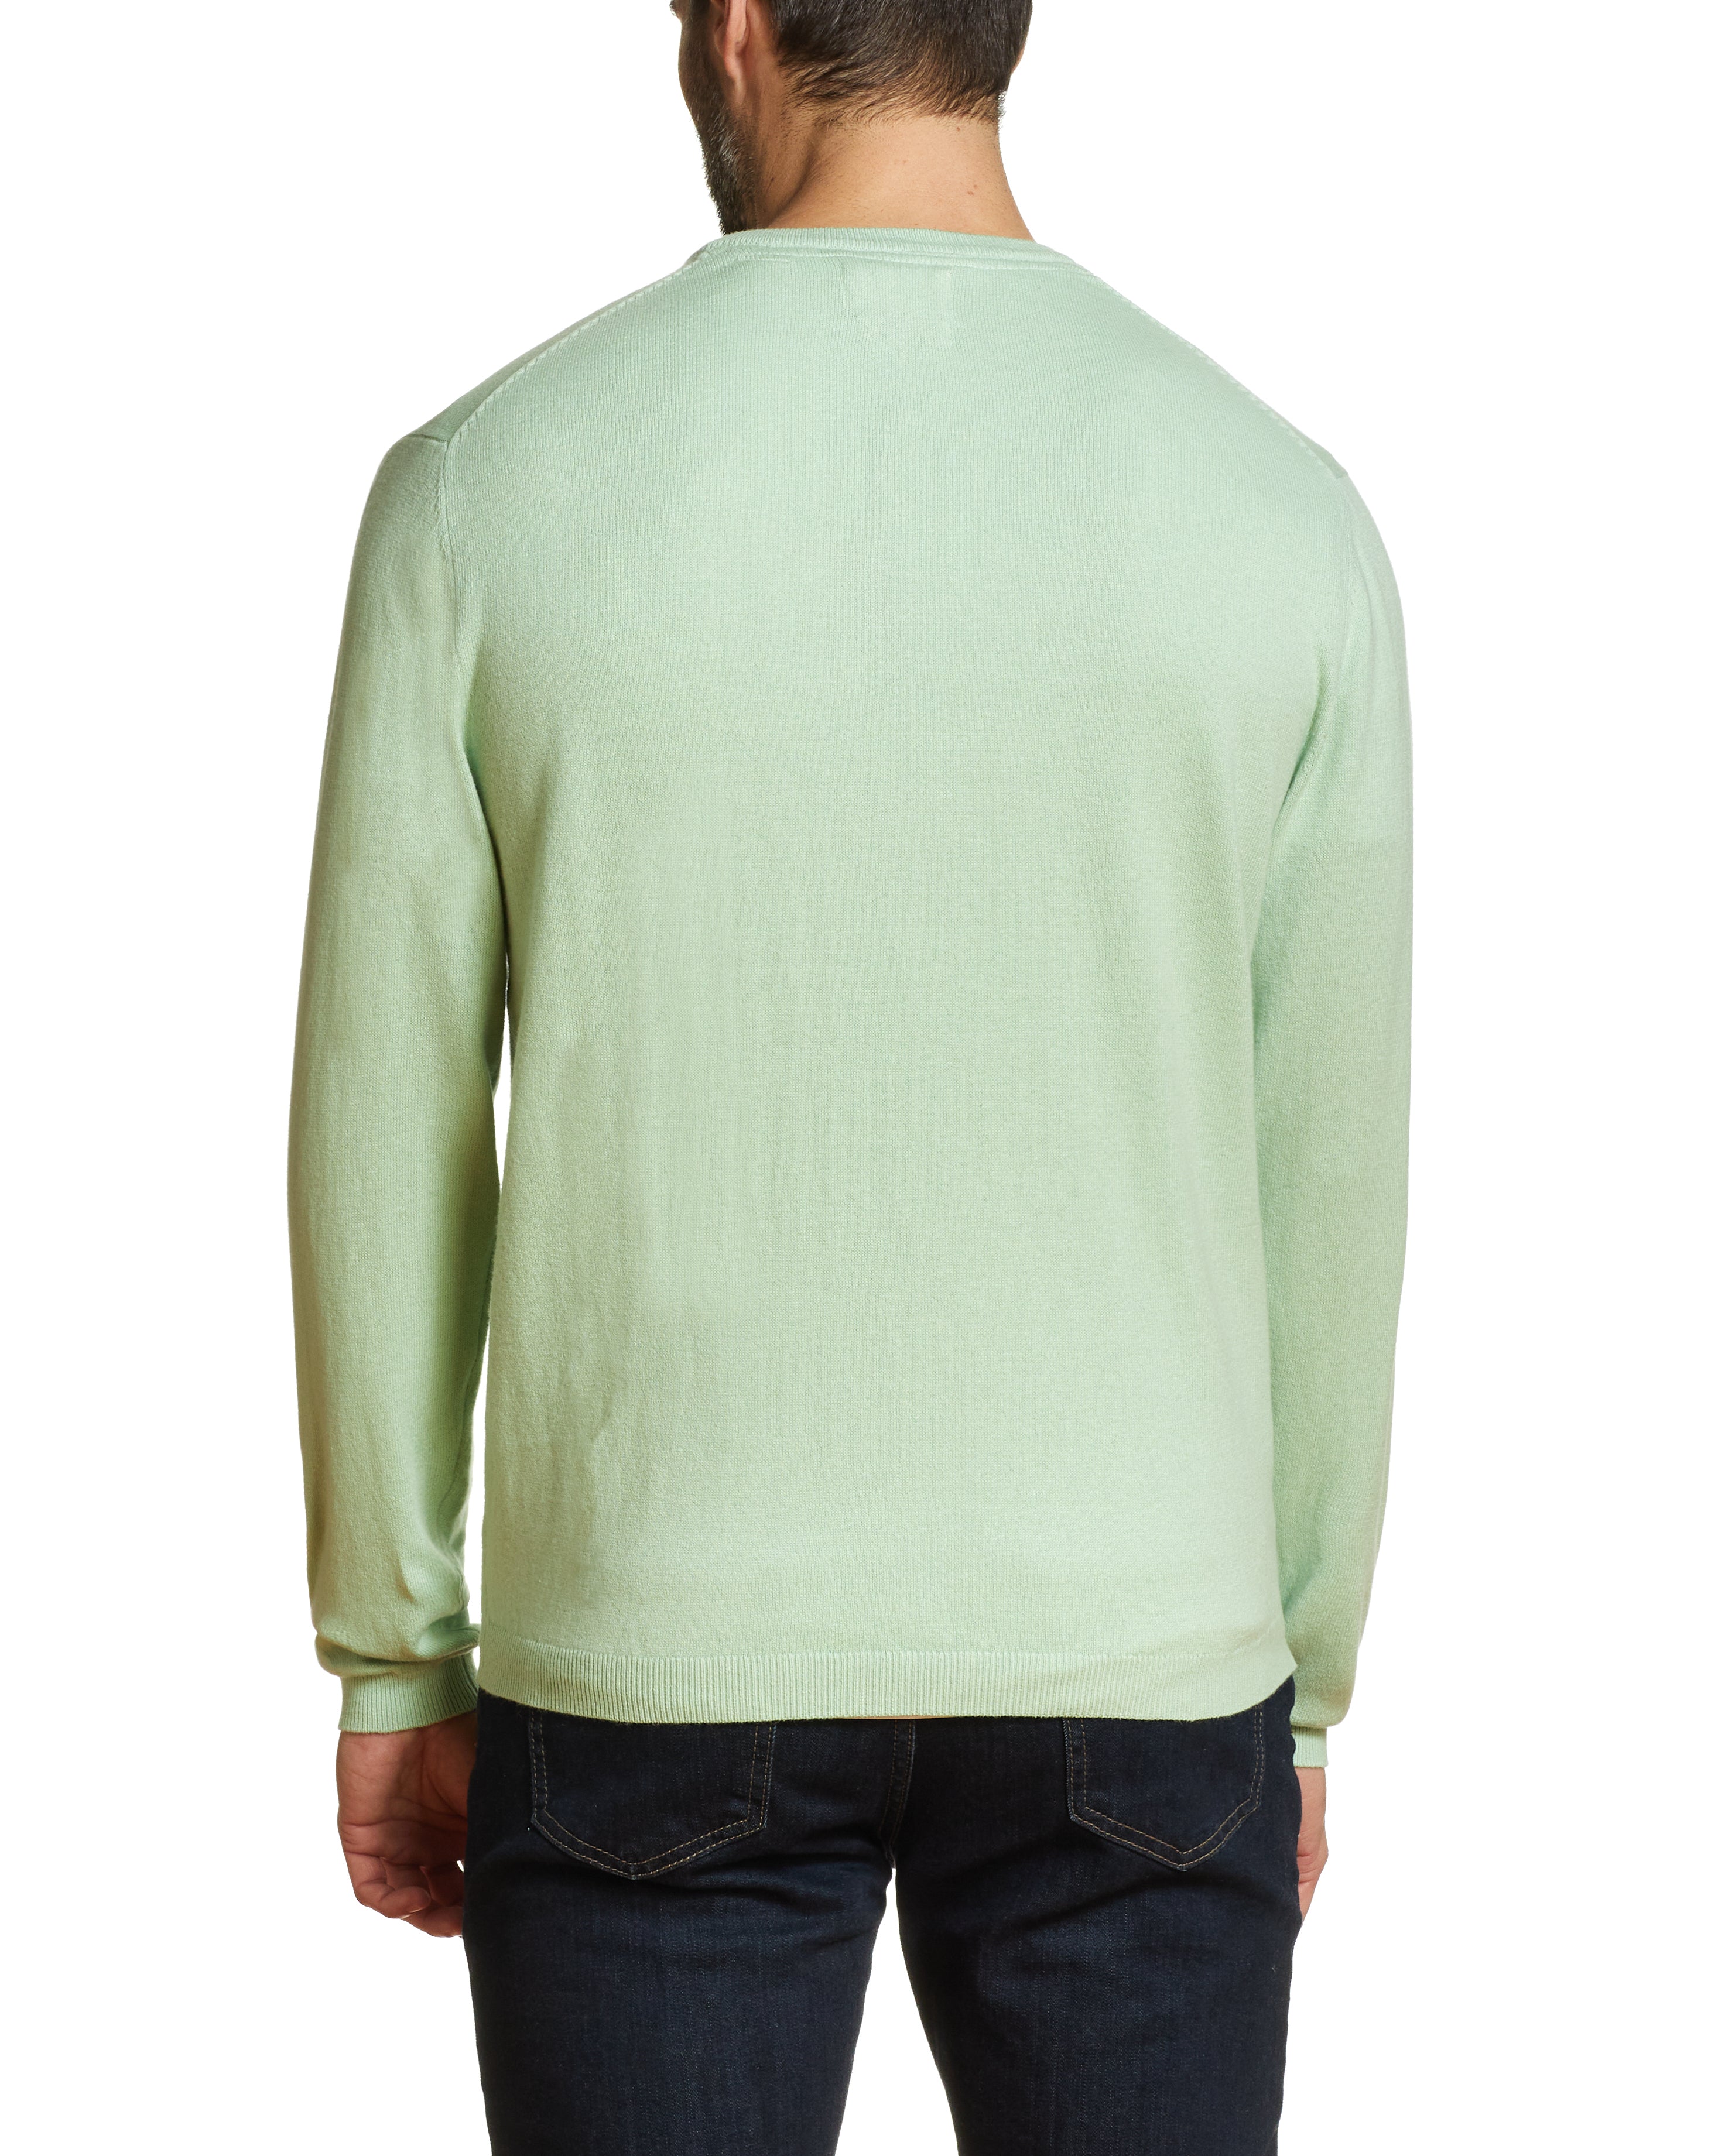 Cotton Cashmere V Neck Sweater in Seafoam